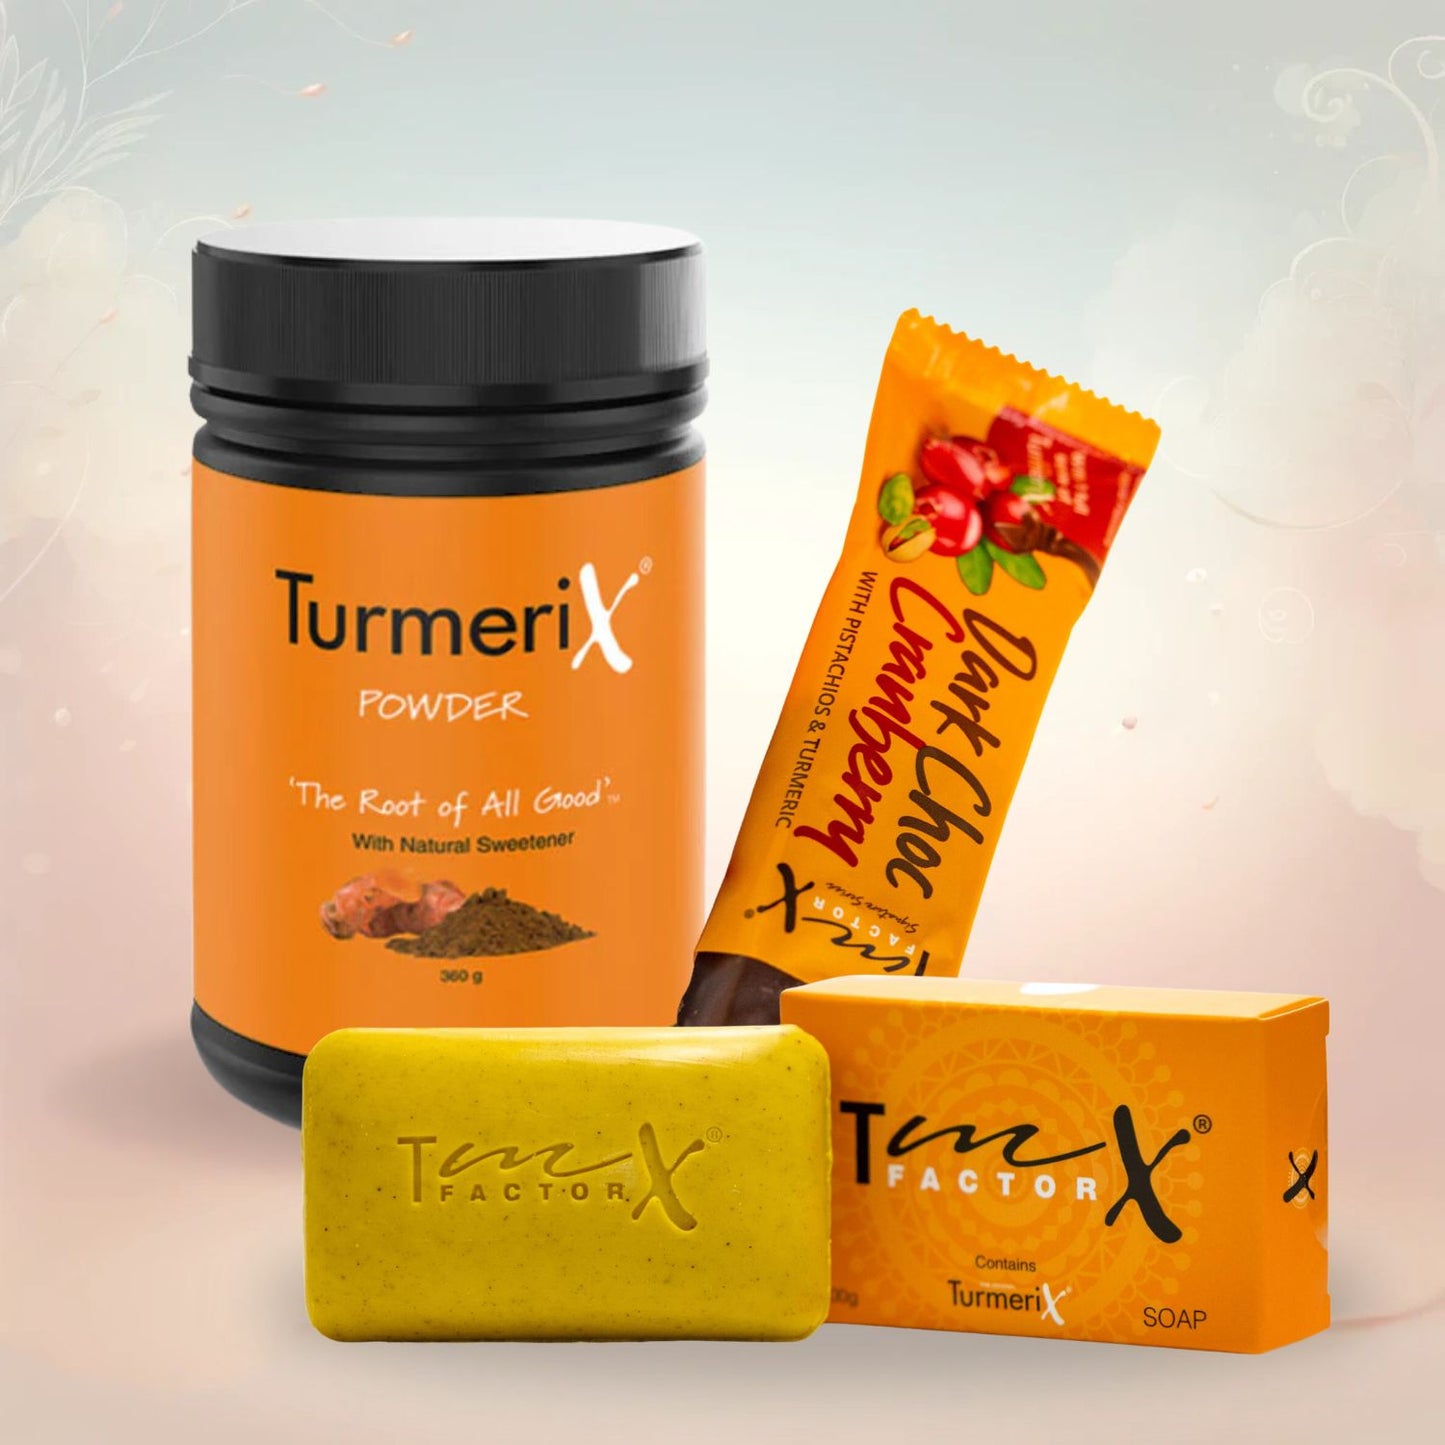 
                  
                    TurmeriX® Powder 360g Tub
                  
                